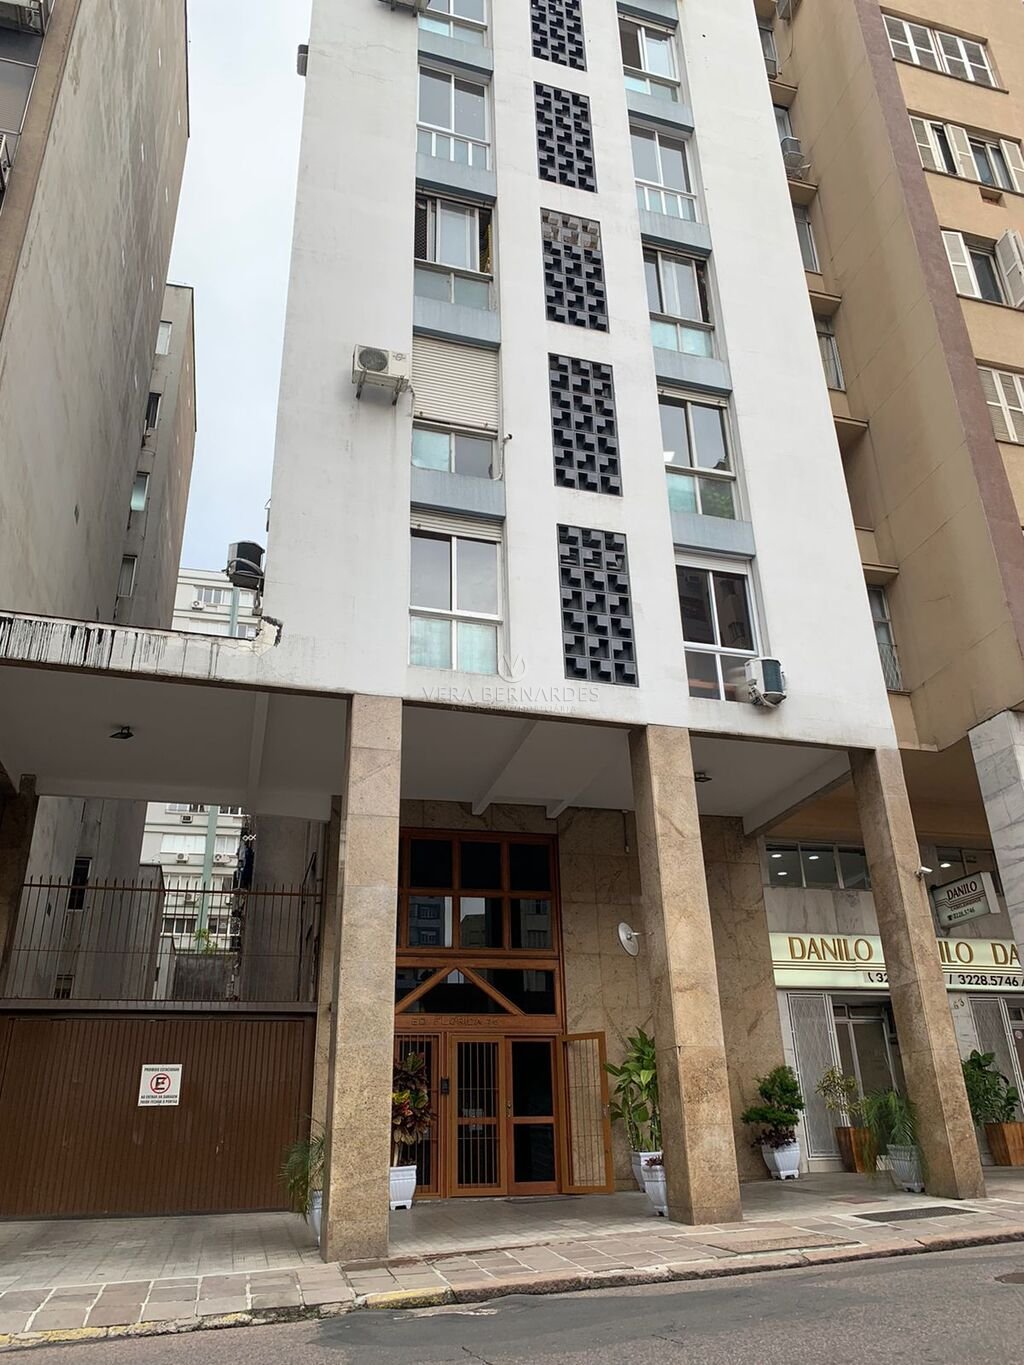 Kitnet com 26m², 1 dormitório no bairro Centro Histórico em Porto Alegre